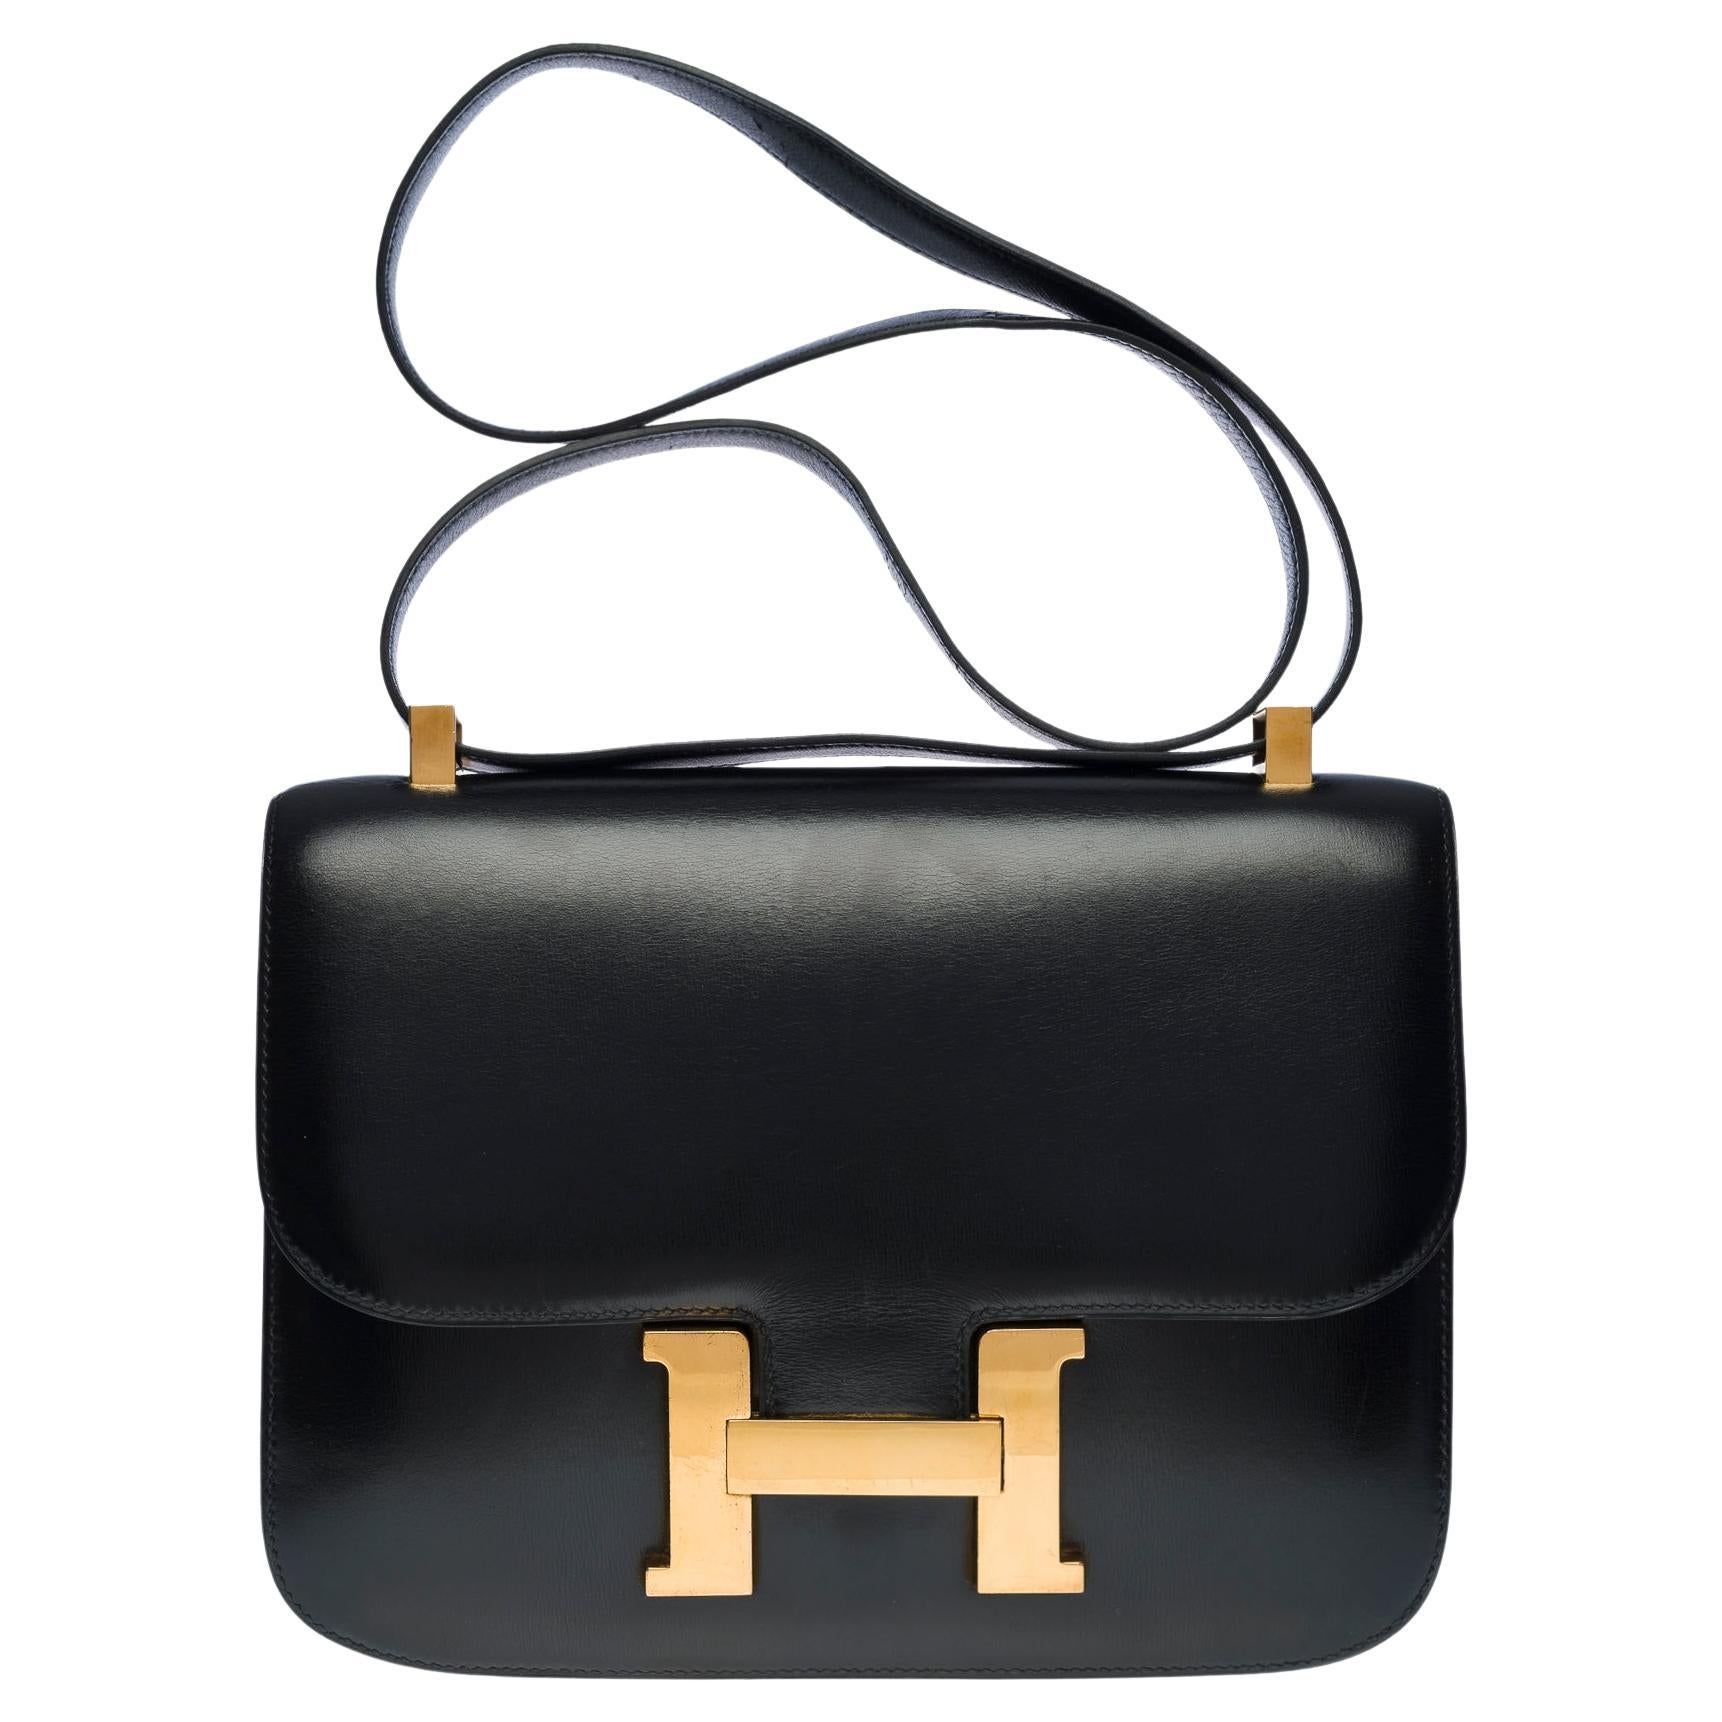 Stunning Hermes Constance 23 shoulder bag in black calfskin box leather, GHW